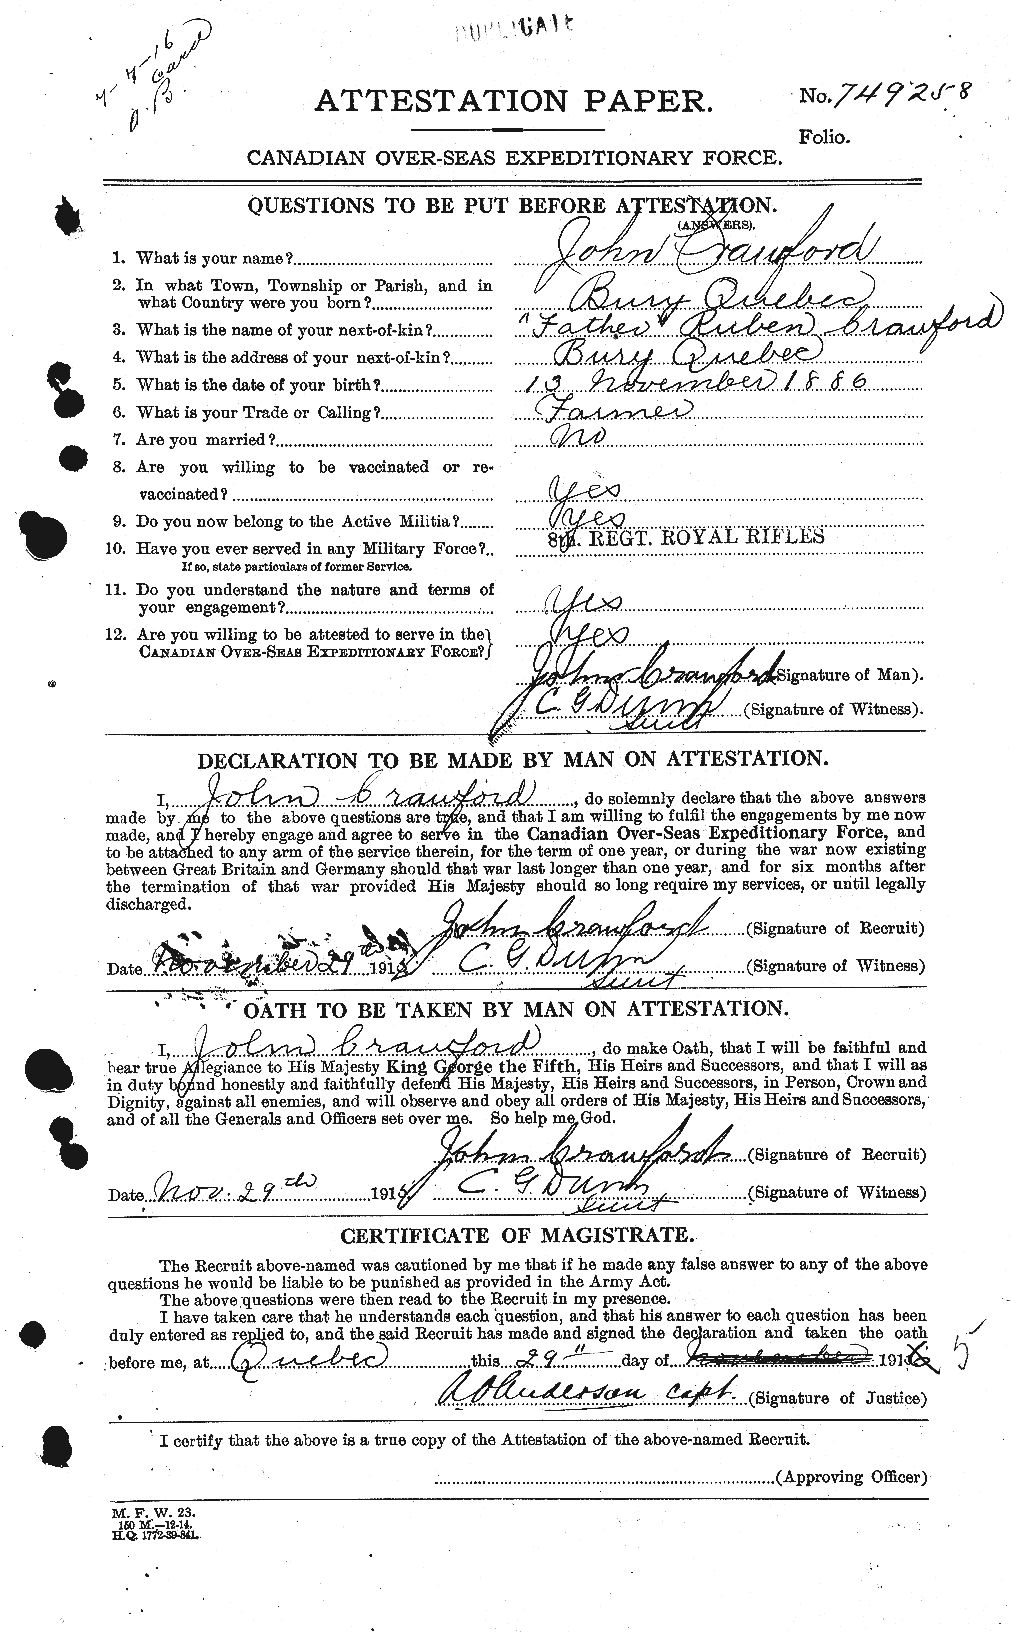 Dossiers du Personnel de la Première Guerre mondiale - CEC 062455a